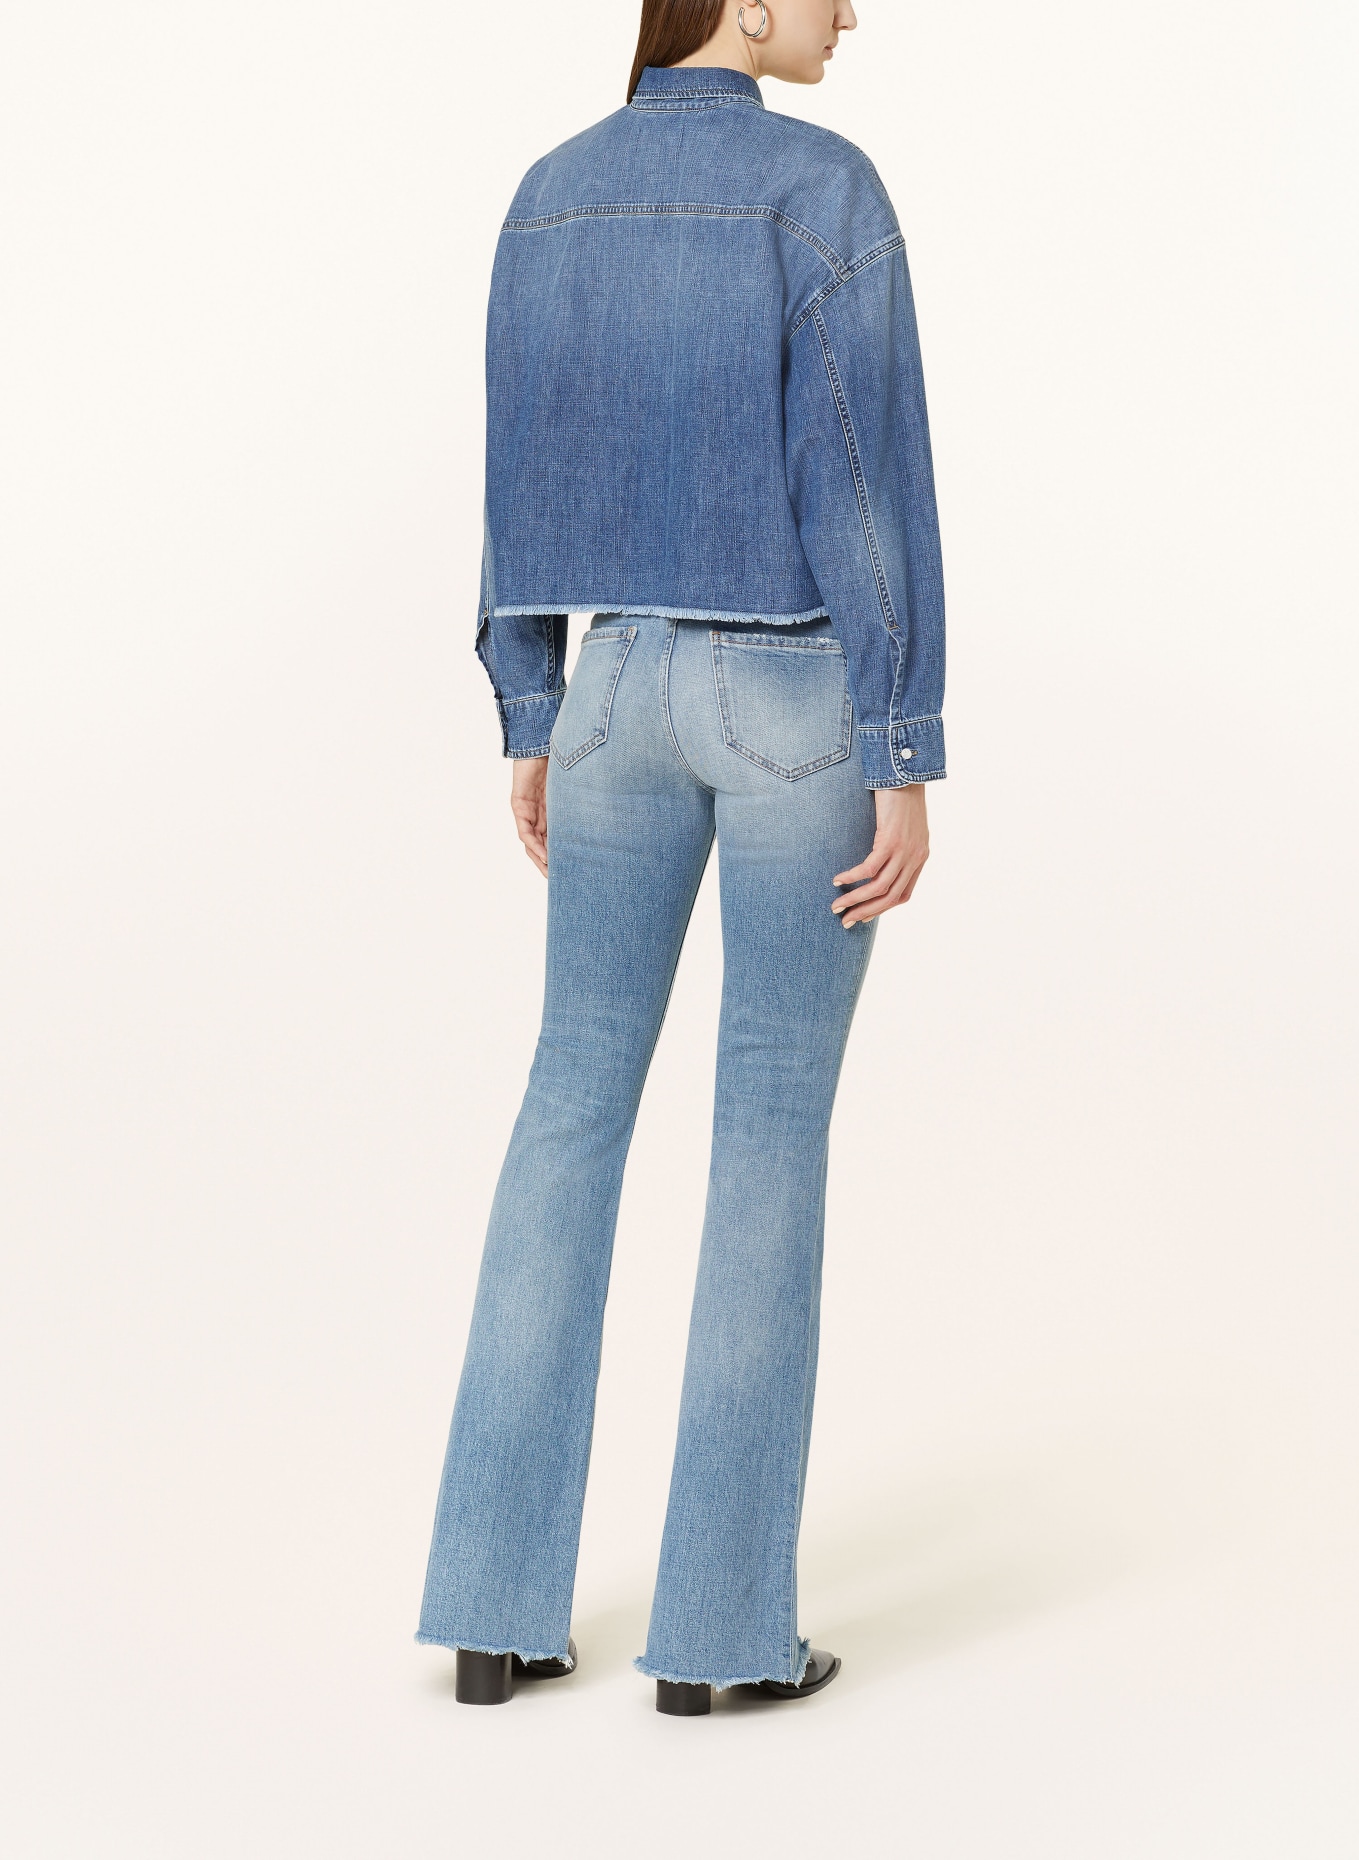 THE.NIM STANDARD Flared jeans KYLIE, Color: W837-VLG LIGHT BLUE (Image 3)